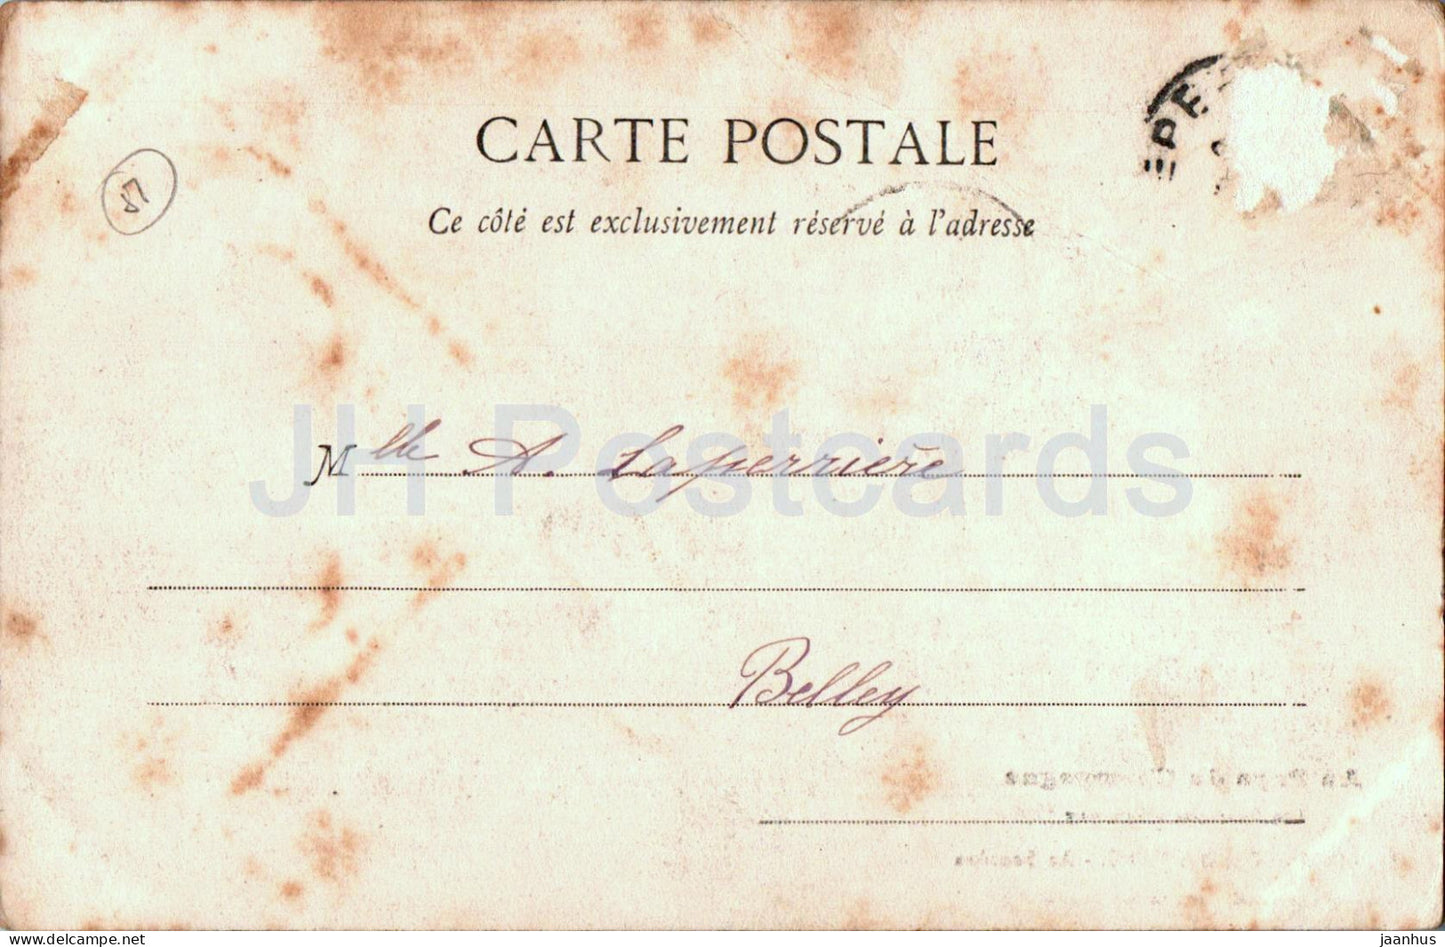 St Martin D'Ablois - Au Sourdon - Les Environs d'Epernay - 83 - alte Postkarte - 1902 - Frankreich - gebraucht 